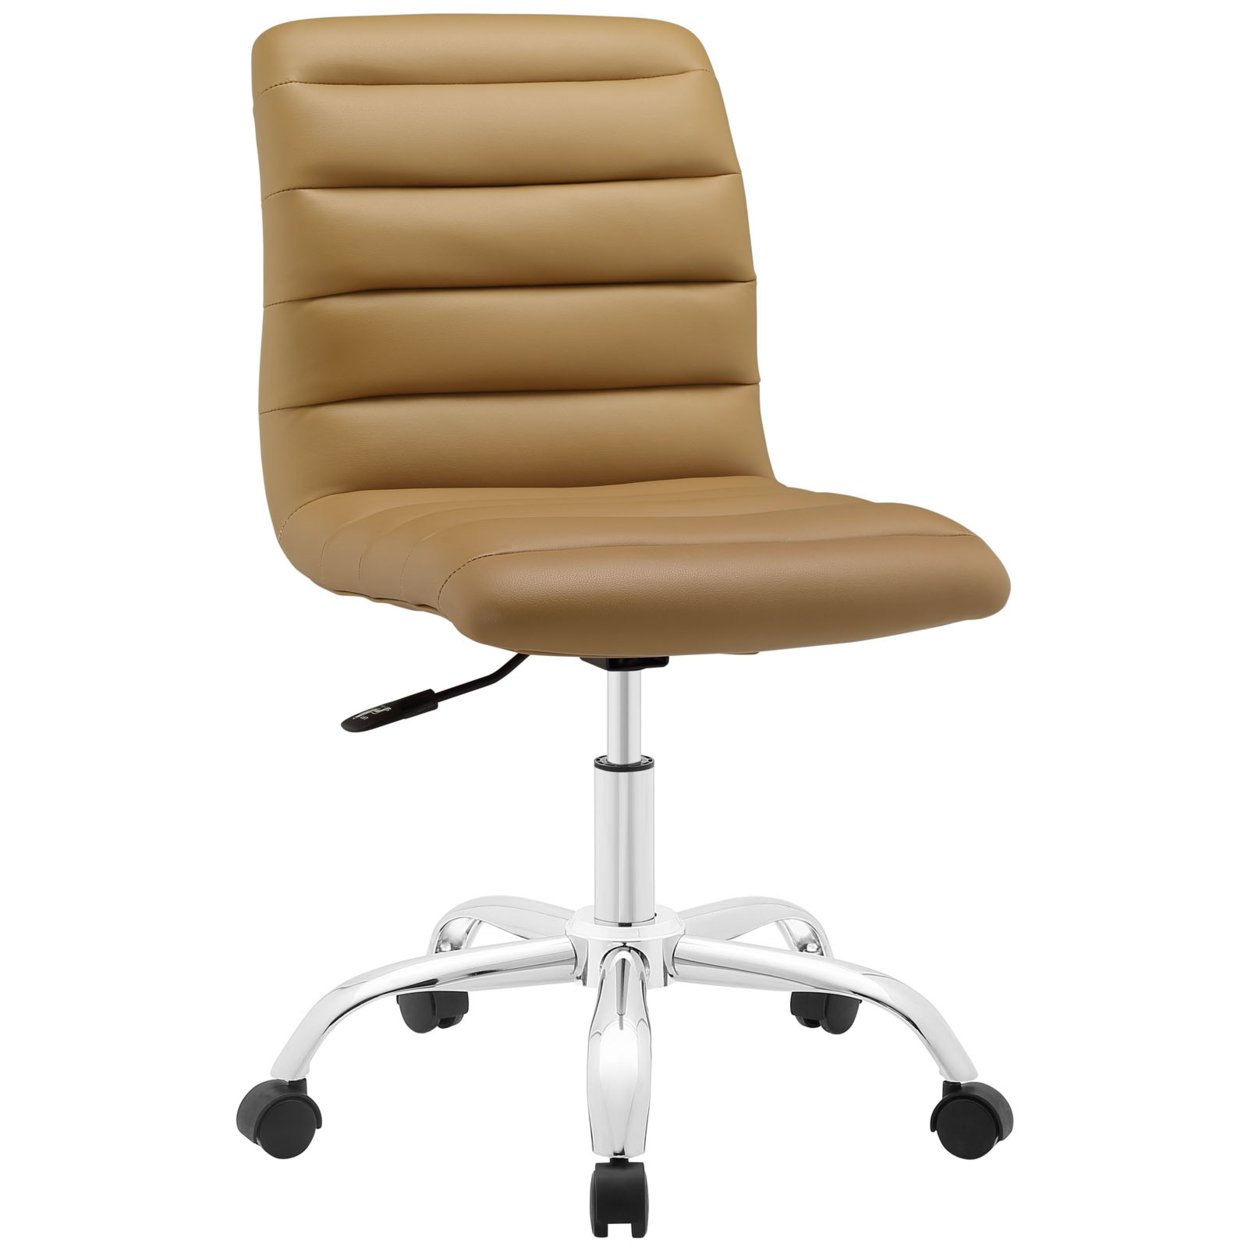 Ripple Armless Mid Back Office Chair, EEI-1532-TAN